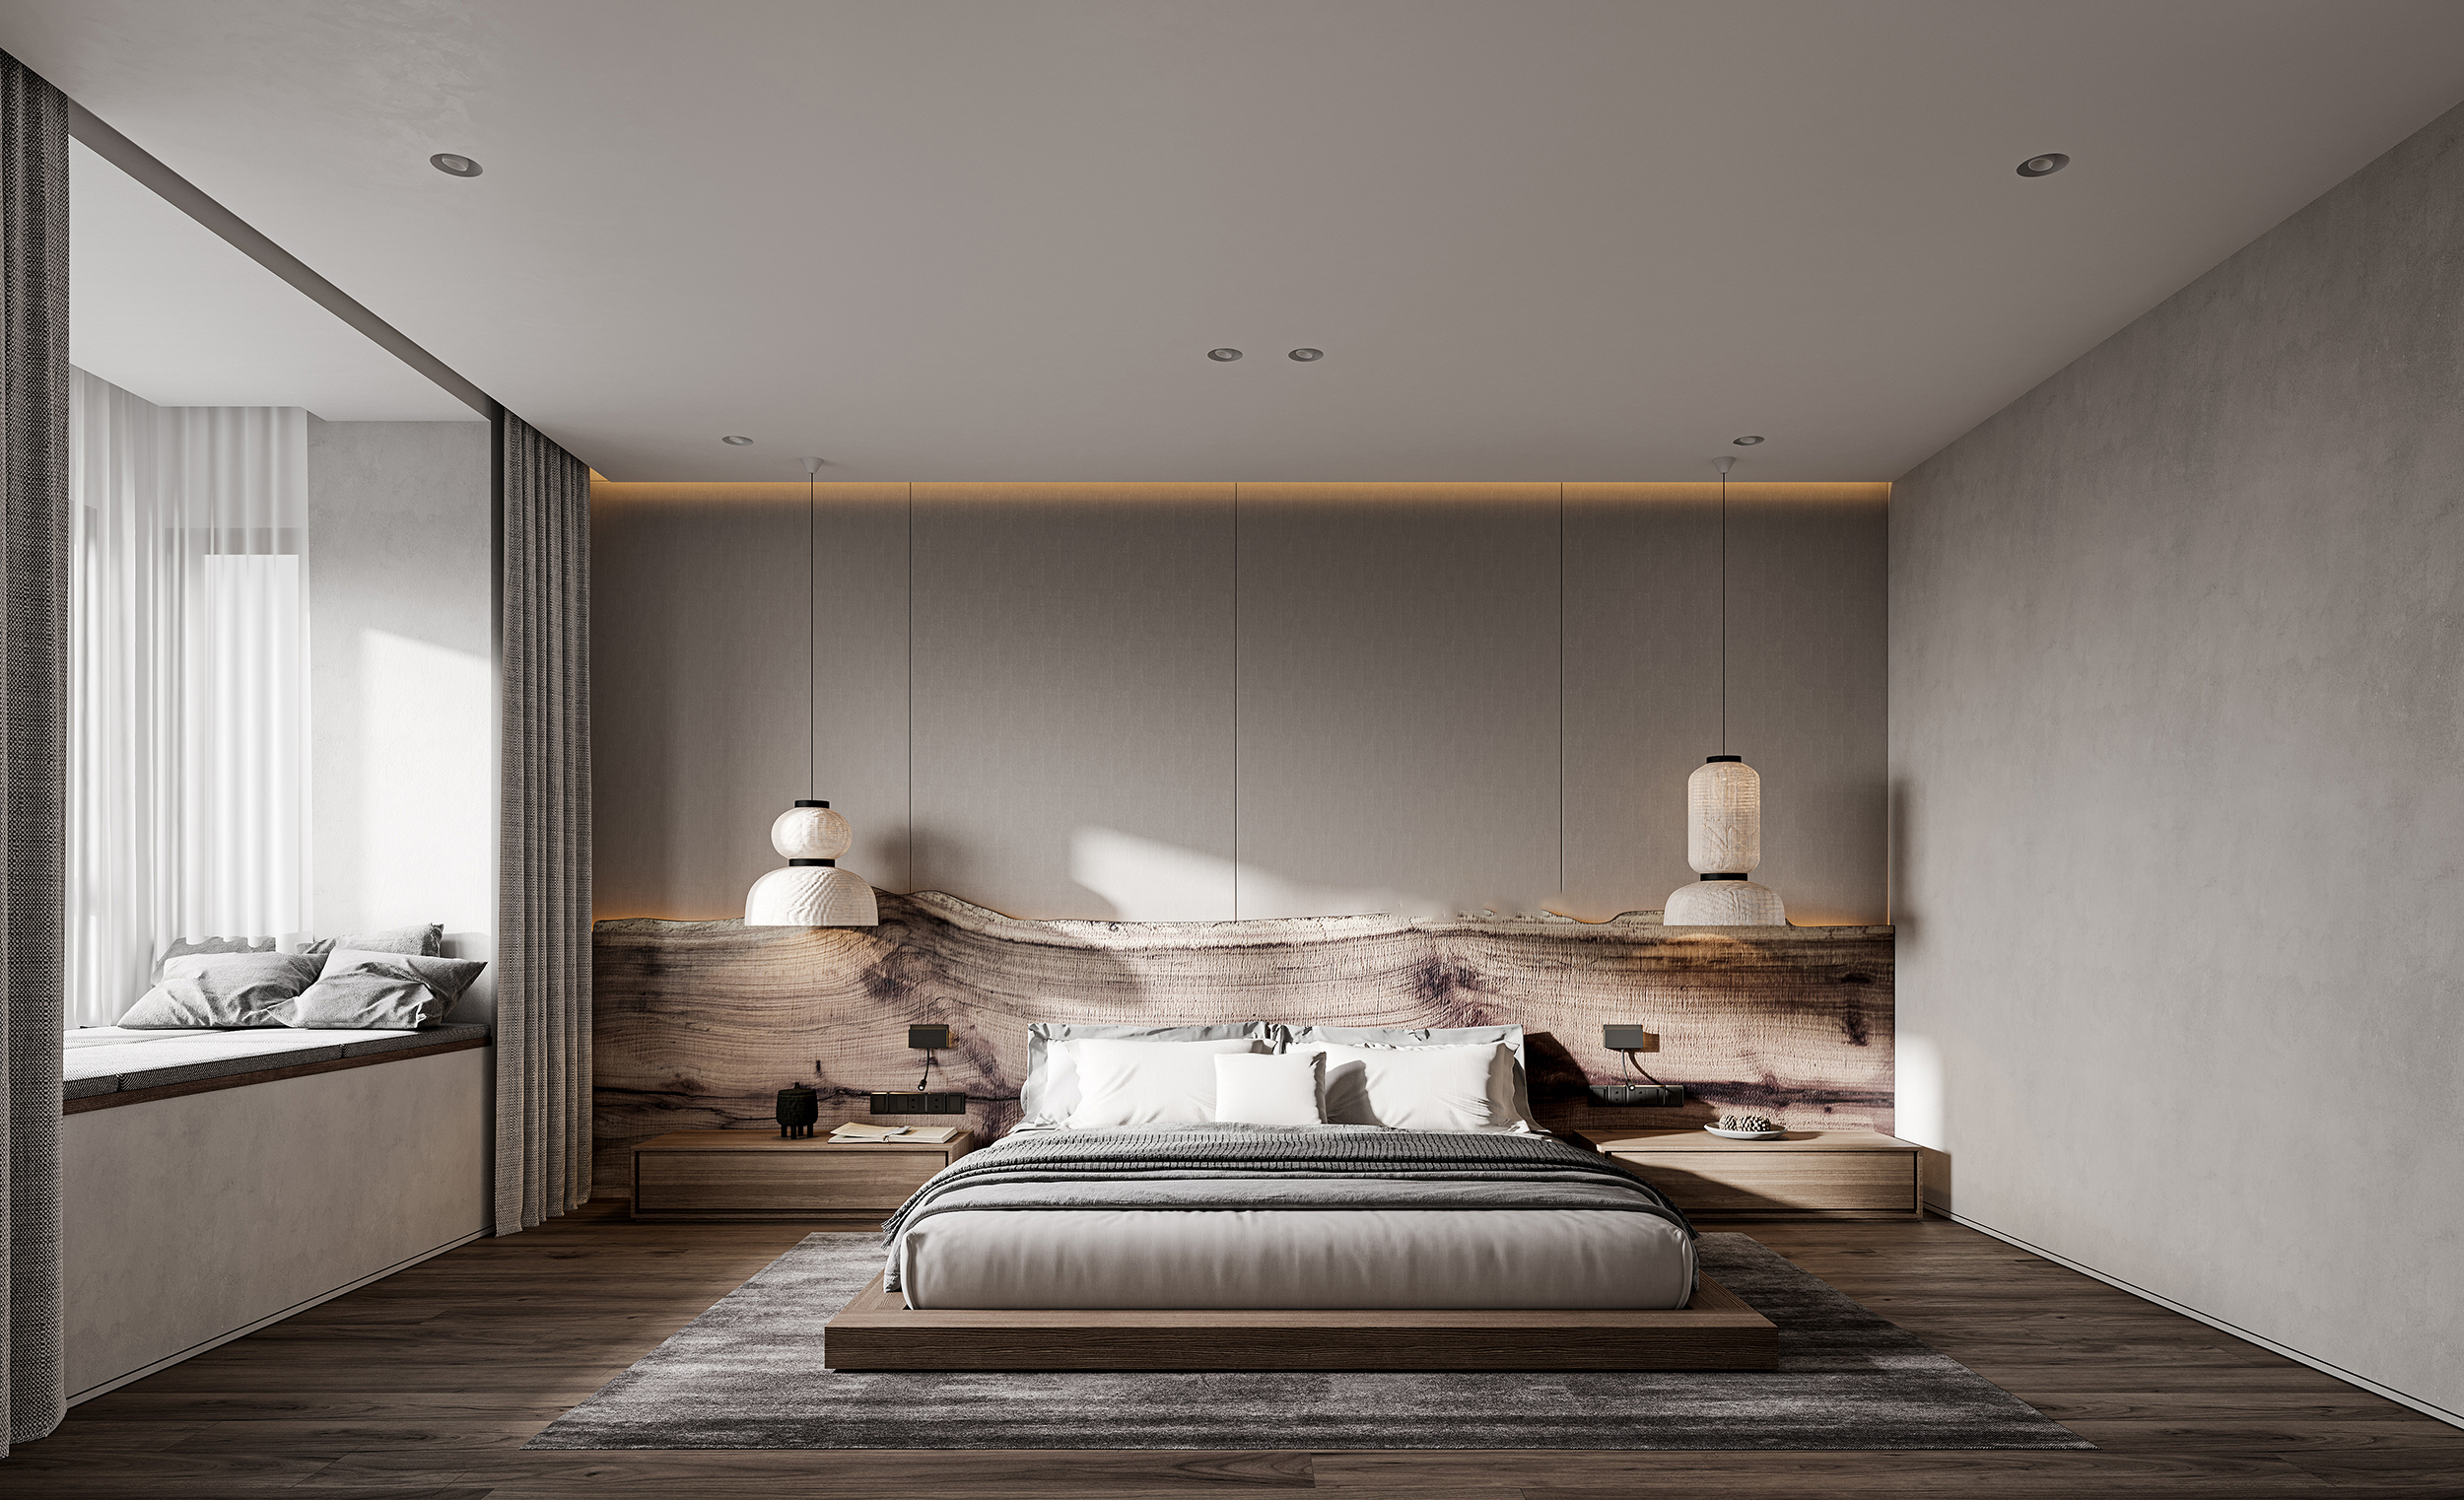 臥榻區設計也很適合放在現代侘寂風臥室設計中，滿足休閒時光